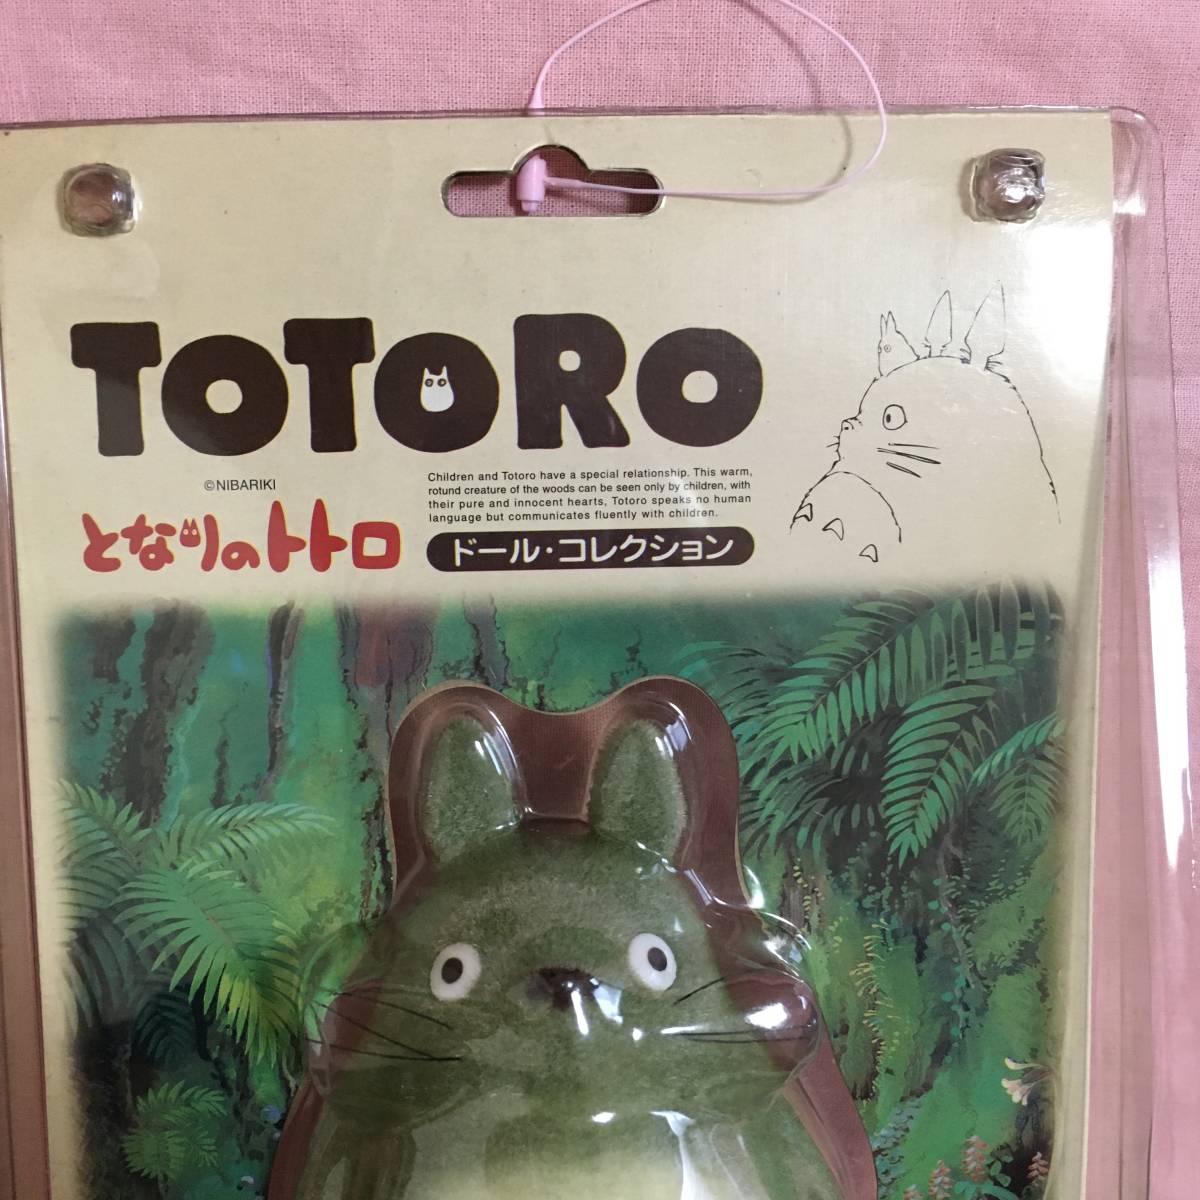  сиденье gchi Tonari no Totoro кукла * коллекция большой to Toro фигурка Studio Ghibli 